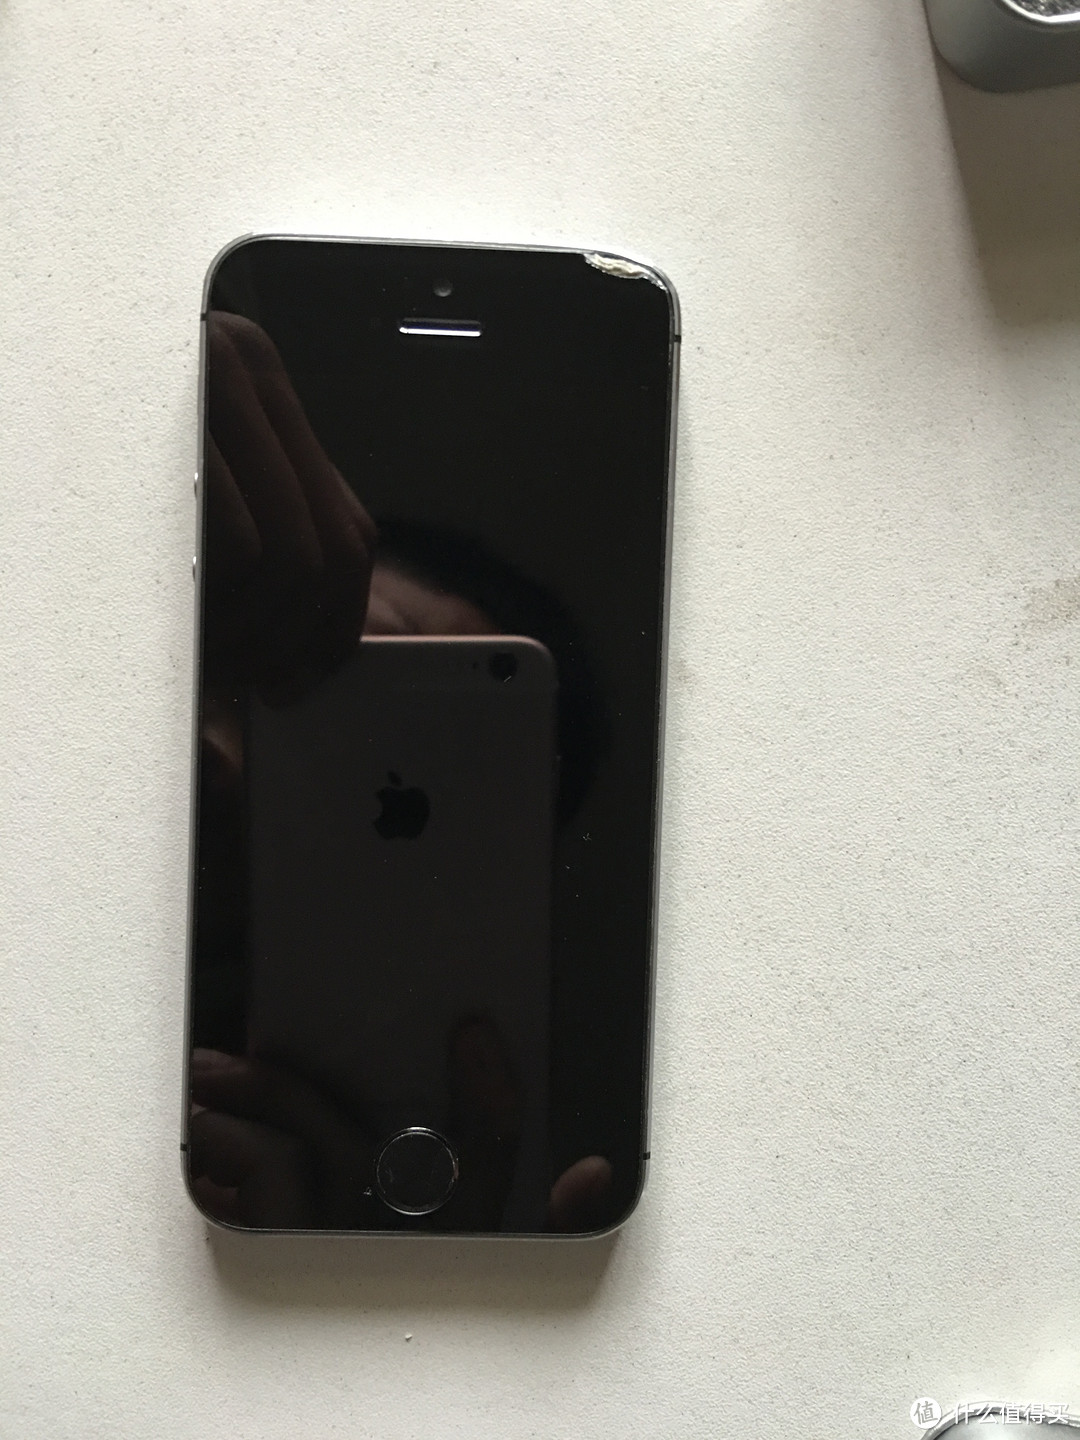 恶魔手下的 Apple 苹果 iPhone 5s 手机 — 学生狗自行更换前置摄像过程